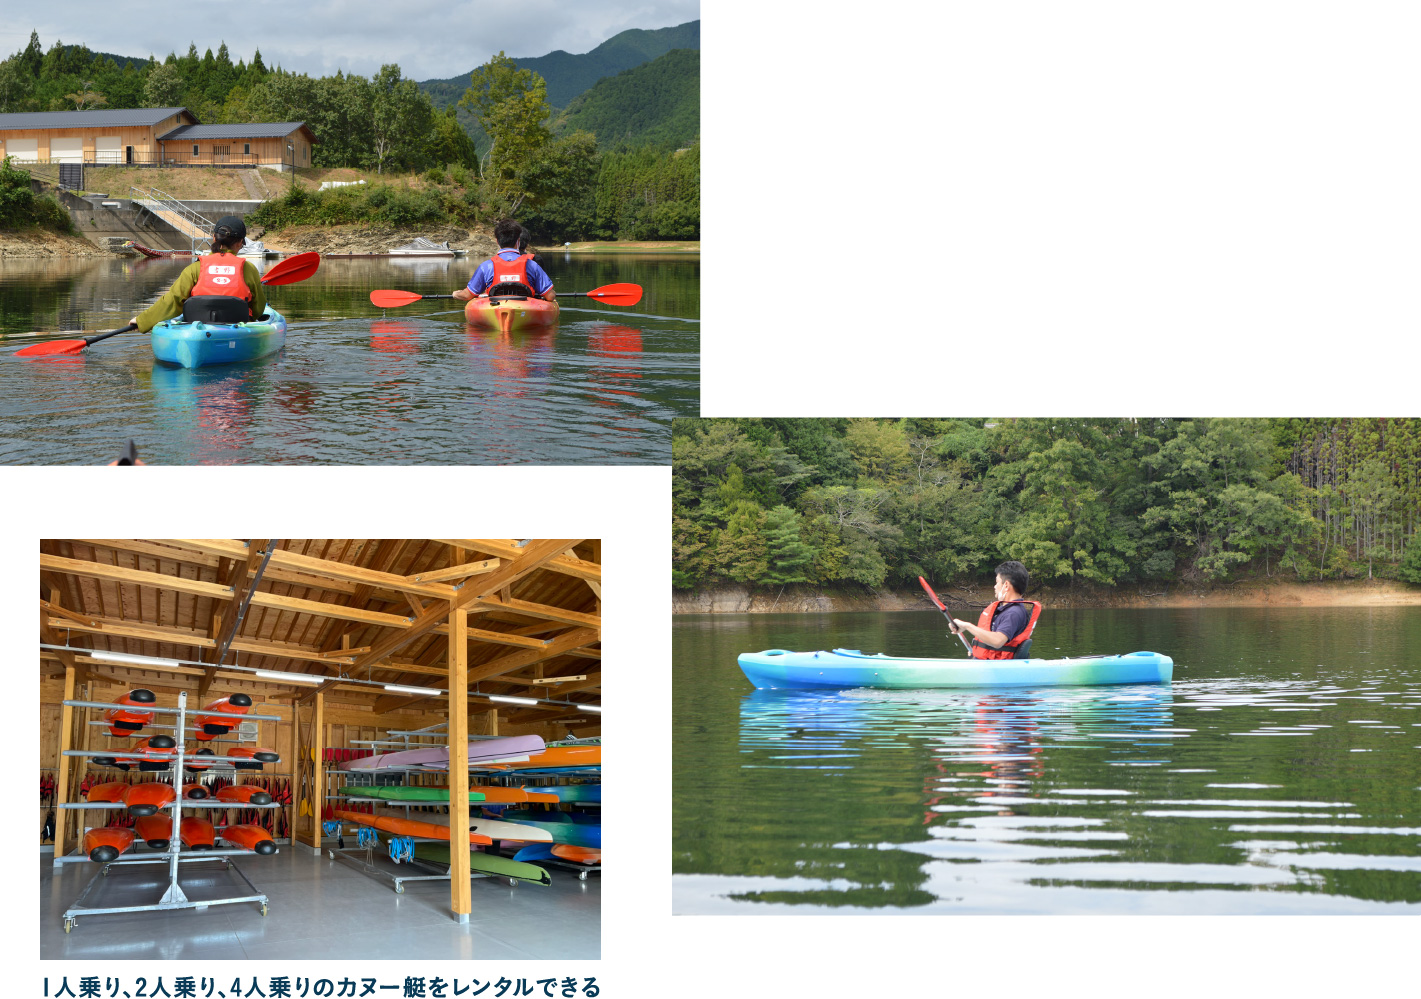 奈良で唯一のカヌー競技場 津風呂湖でアクティブに